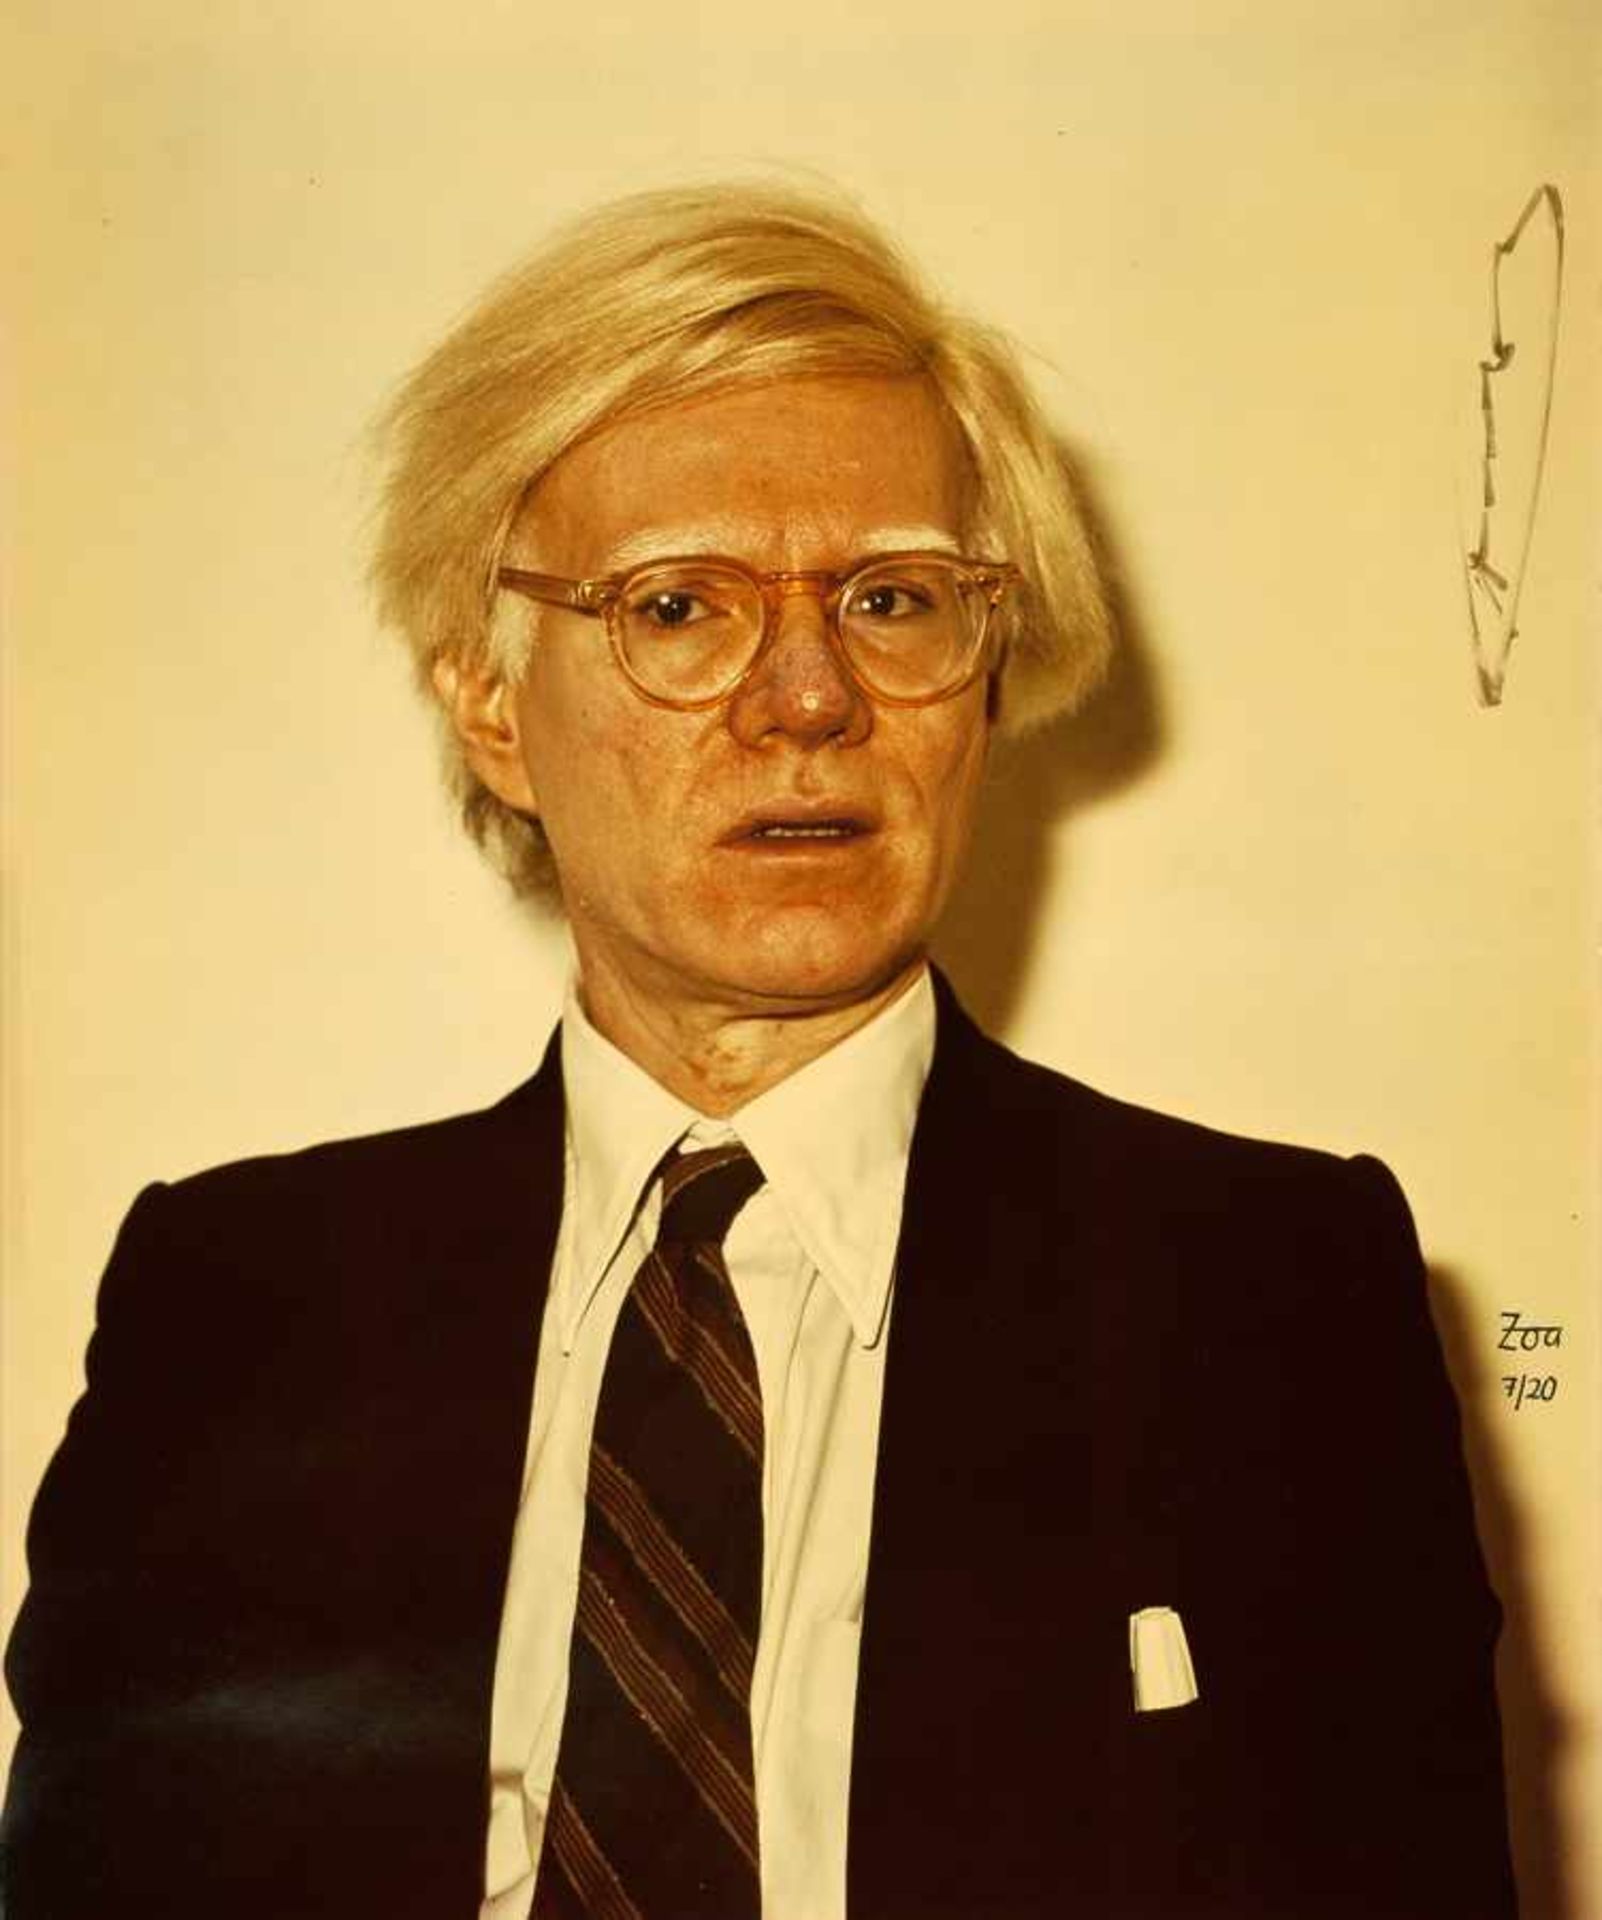 Zoa. Andy Warhol. Fotografie (C-Print). Um 1980. 60,5 : 50,5 cm. Signiert und nummeriert, auch vom